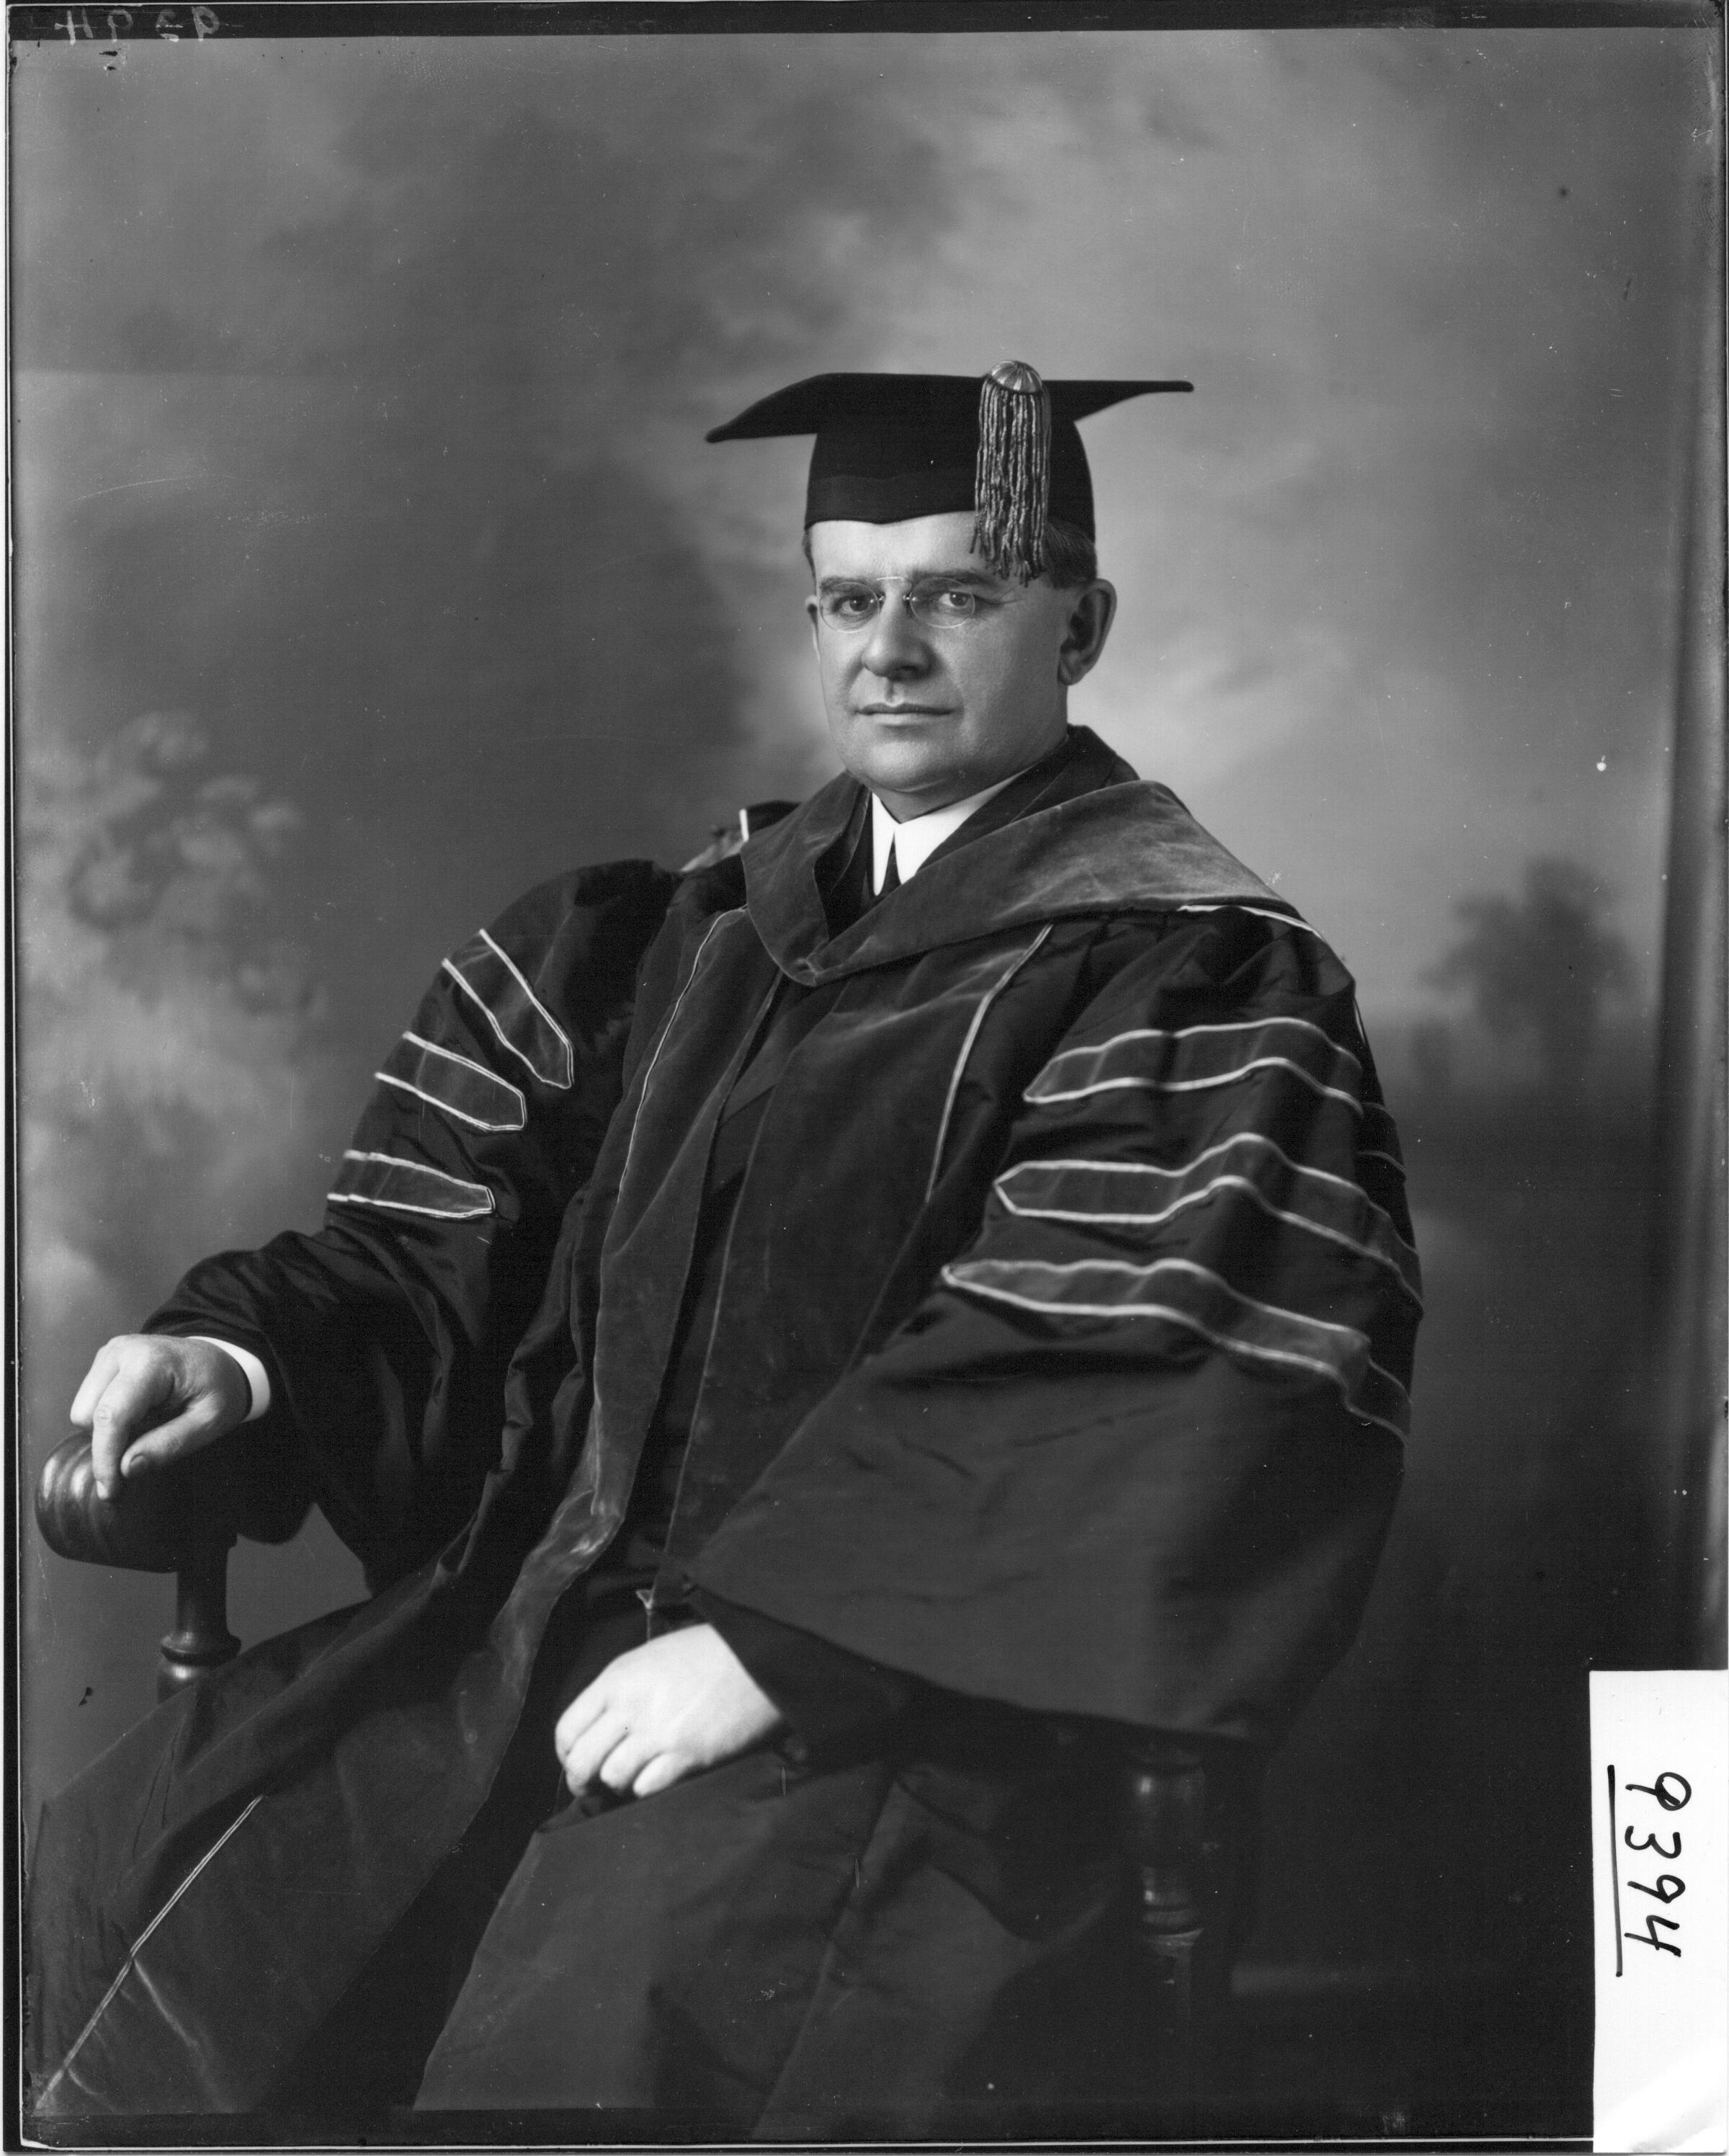 Guy Potter Benton in academic cap and gown 1909 (3192580532)